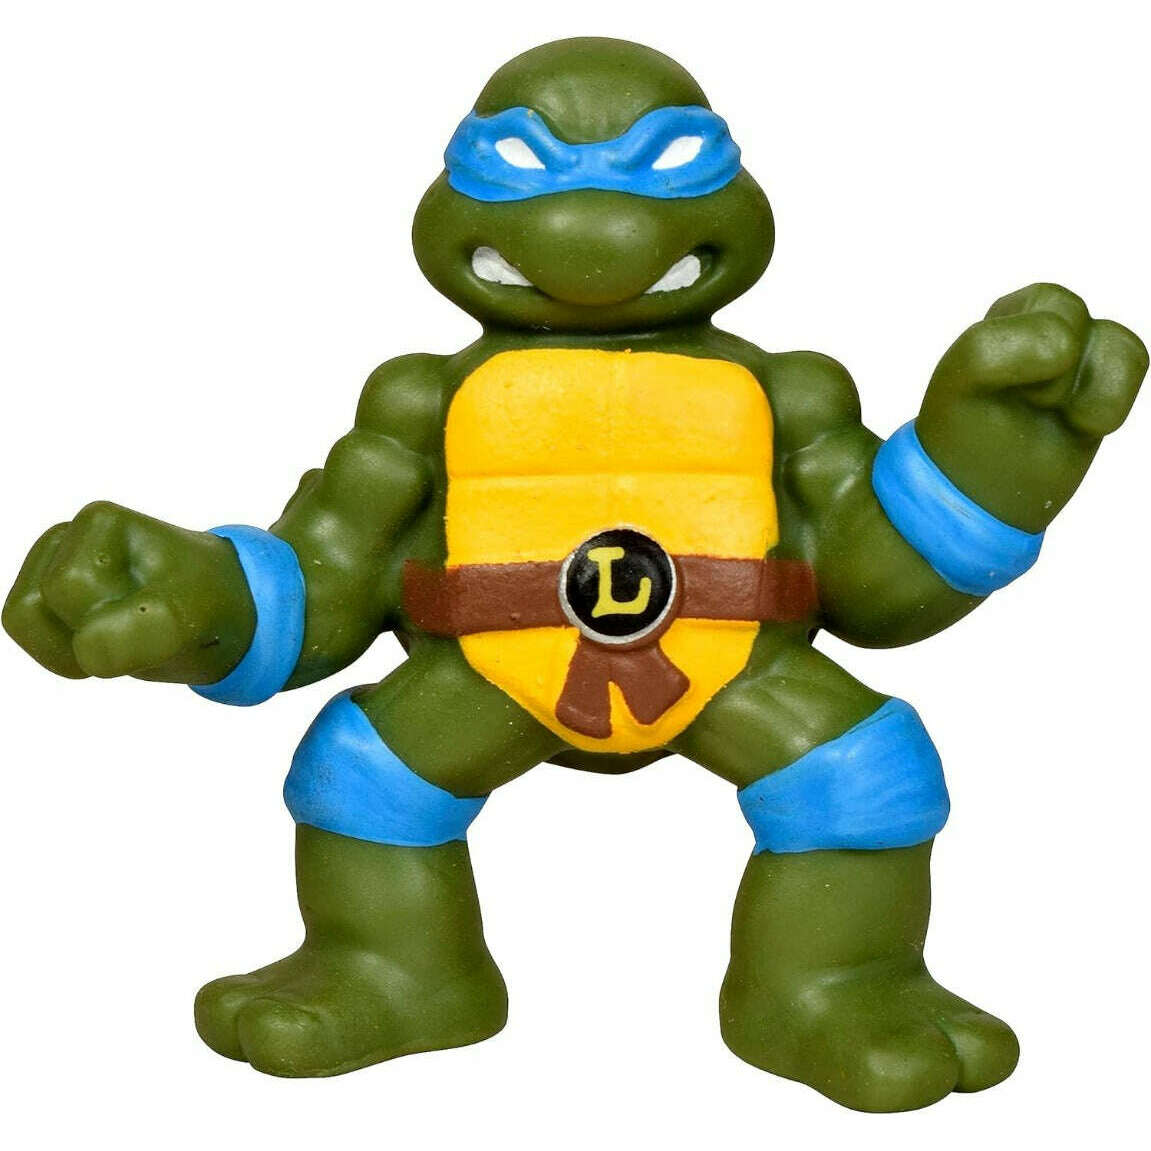 Toys N Tuck:Teenage Mutant Ninja Turtles Stretch Ninjas - Leonardo,Teenage Mutant Ninja Turtles